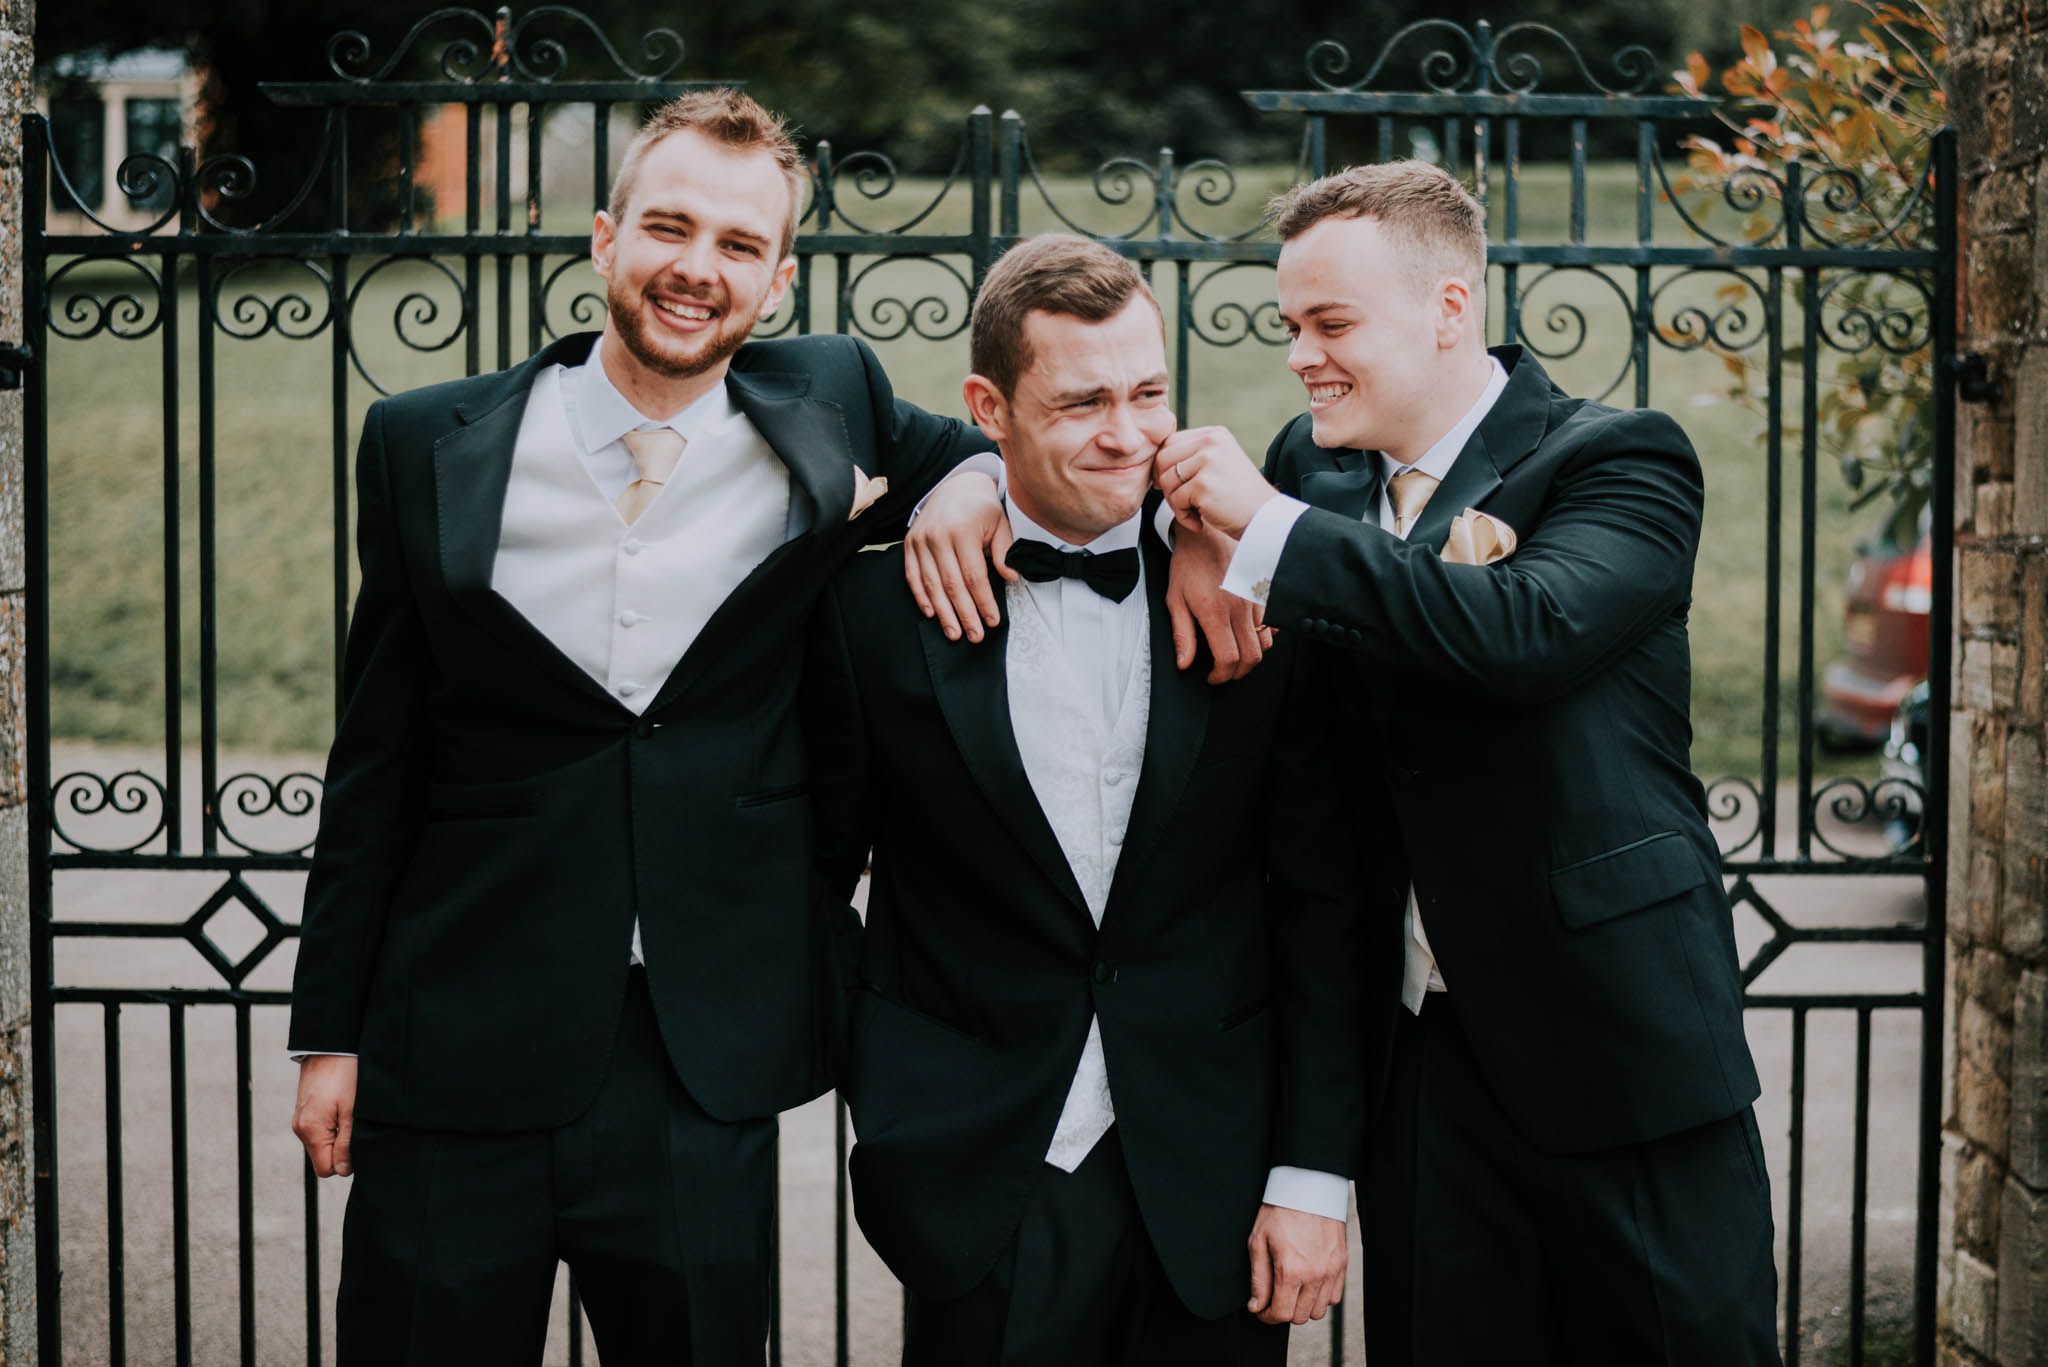 Groom-bestmen-wedding-blog-scott-stockwell-photography-end-2017.jpg